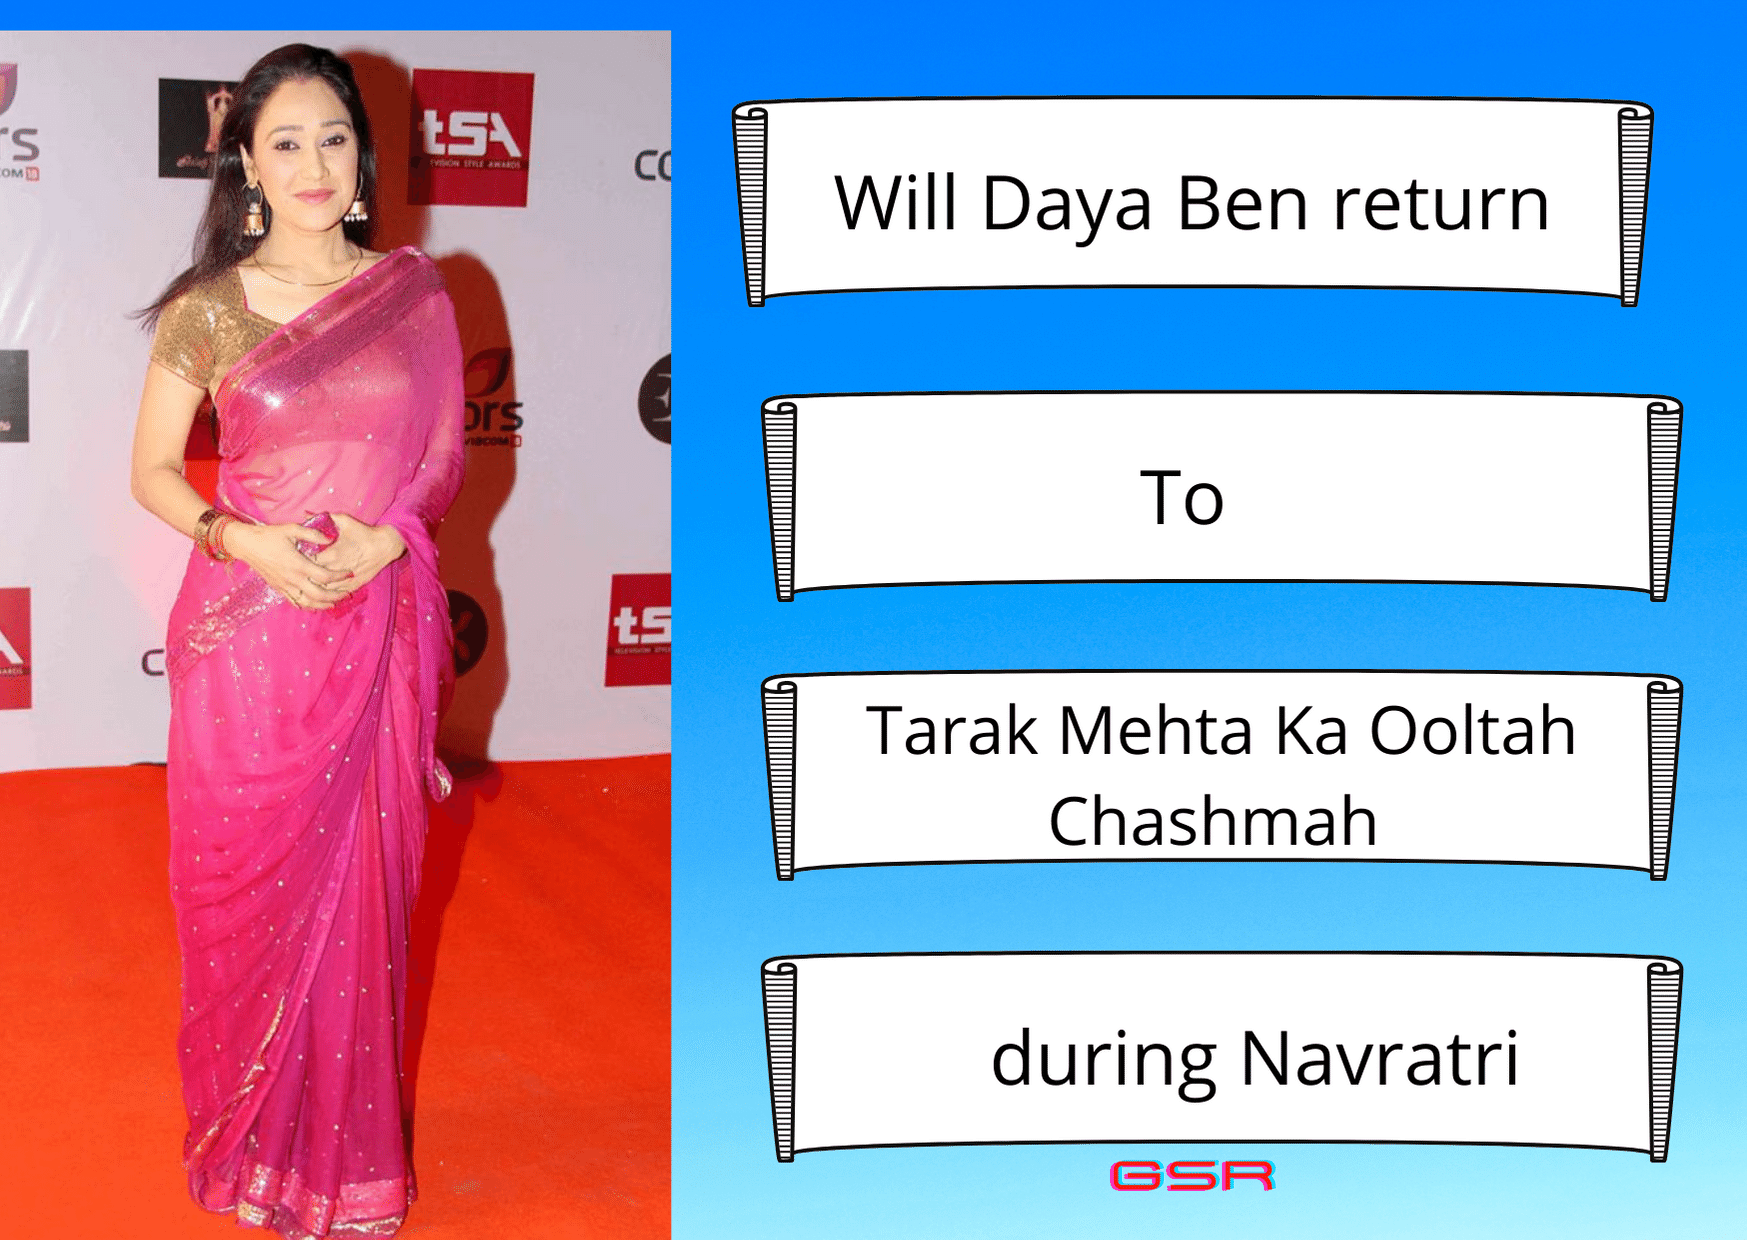 Will Daya Ben return To Tarak Mehta Ka Ooltah Chashmah during Navratri Will Daya Ben return To Tarak Mehta Ka Ooltah Chashmah during Navratri कॉमेडी शो Taarak Mehta Ka Ooltah Chashmah में Daya ben के रूप में प्रसिद्धि पाने वाली Disha Vakani को दो साल के लंबे मातृत्व अवकाश के बाद शो में वापसी करने की अफवाह है। अफवाहों के अनुसार, अभिनेता नवरात्रि के आसपास अपनी वापसी कर सकते थे। अब निर्माता Asit Kumar Modi ने इसके बारे में खोला है। "अब भी पक्का नहीं है (अभी कुछ भी पुष्टि नहीं है)।" मोदी ने कहा, Disha ने पिछले साल शो में अतिथि भूमिका के लिए शूटिंग की थी। उनके पति Mayur Padia ने कहा था कि वे निर्माताओं के साथ बातचीत कर रहे थे, लेकिन एक समझौते पर हड़ताल नहीं कर सकते थे। उन्होंने Pinkvilla से कहा था, '' निर्माताओं के साथ हमारी बातचीत अभी भी अनसुलझी है। इसलिए, वह अच्छे के लिए शो में वापस नहीं आएंगी। हम उम्मीद कर रहे हैं कि हम एक सौहार्दपूर्ण समाधान तक पहुँच सकते हैं। ” उसी पर प्रतिक्रिया देते हुए, Modi ने कहा था, “मुझे यह स्वीकार करना चाहिए कि हमारे बीच अभी भी बातचीत जारी है, और हम जल्द ही एक समाधान तक पहुंचने की उम्मीद करते हैं। हम महीनों से Disha के साथ बातचीत कर रहे हैं। जैसा मैंने पहले कहा, nobody is bigger than the show. ”